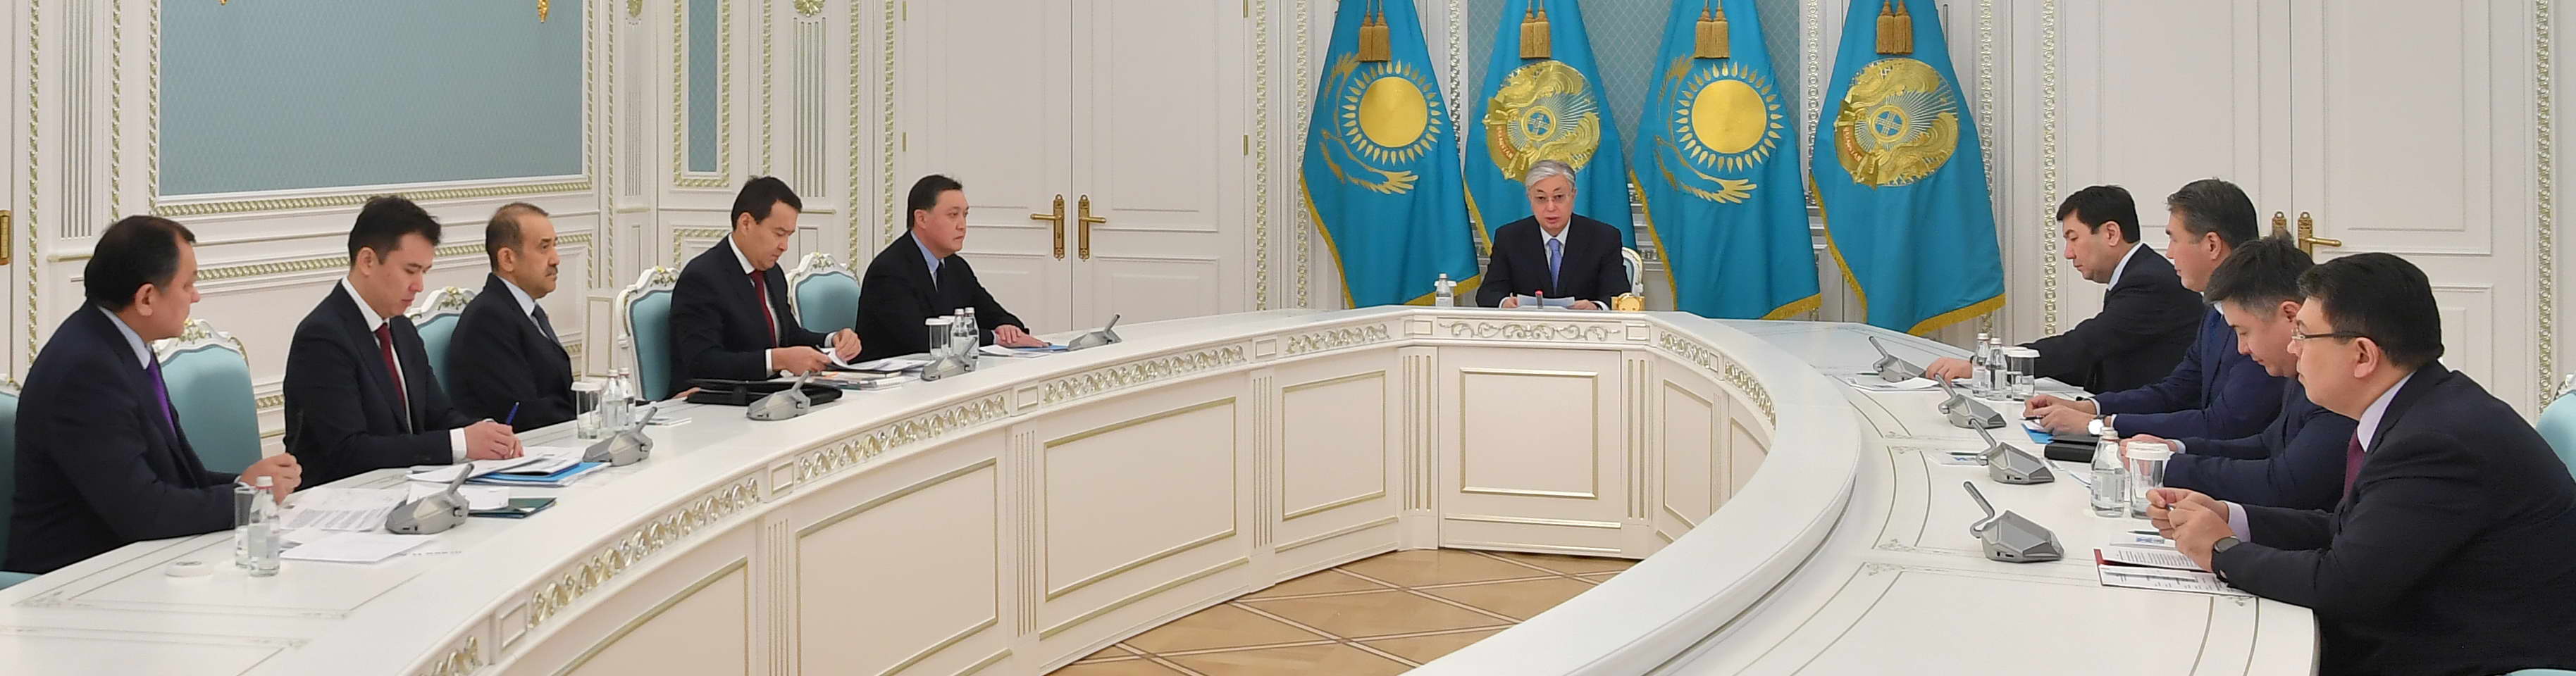 Қазақстан Республикасының Президенті Қасым-Жомарт Тоқаев еліміздегі экономикалық ахуал жөнінде кеңес өткізді.